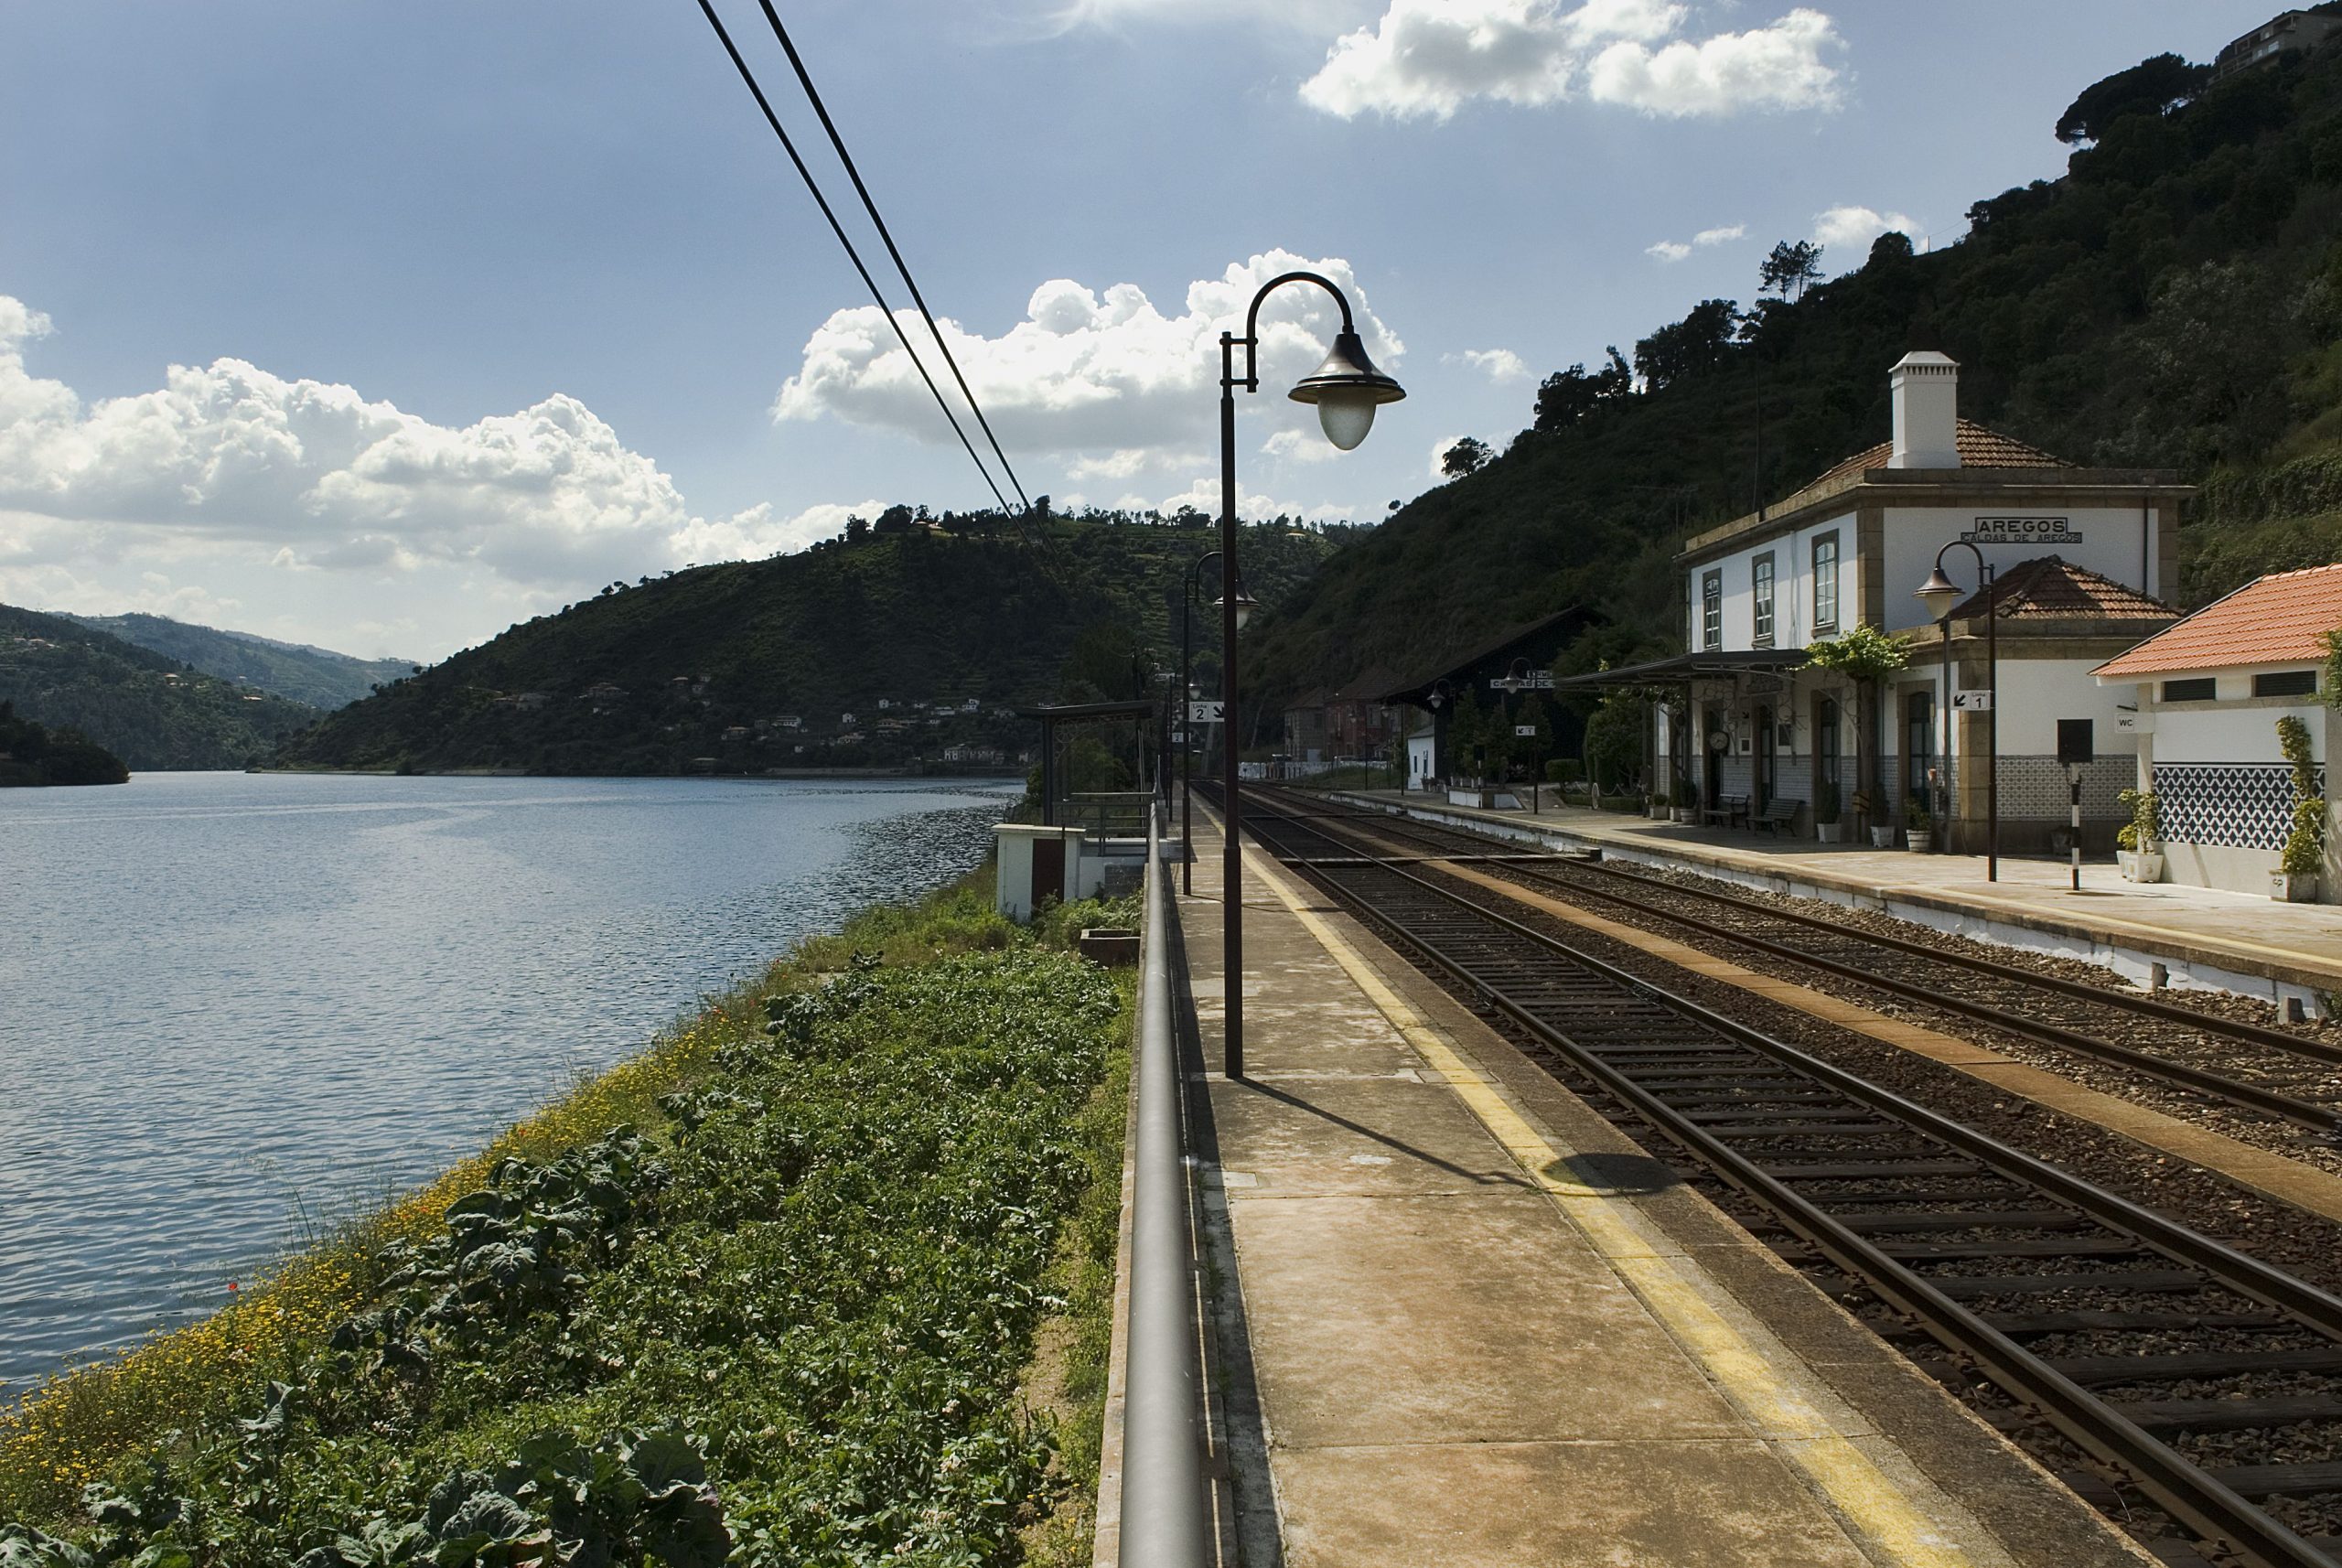 estação aregos linha do douro